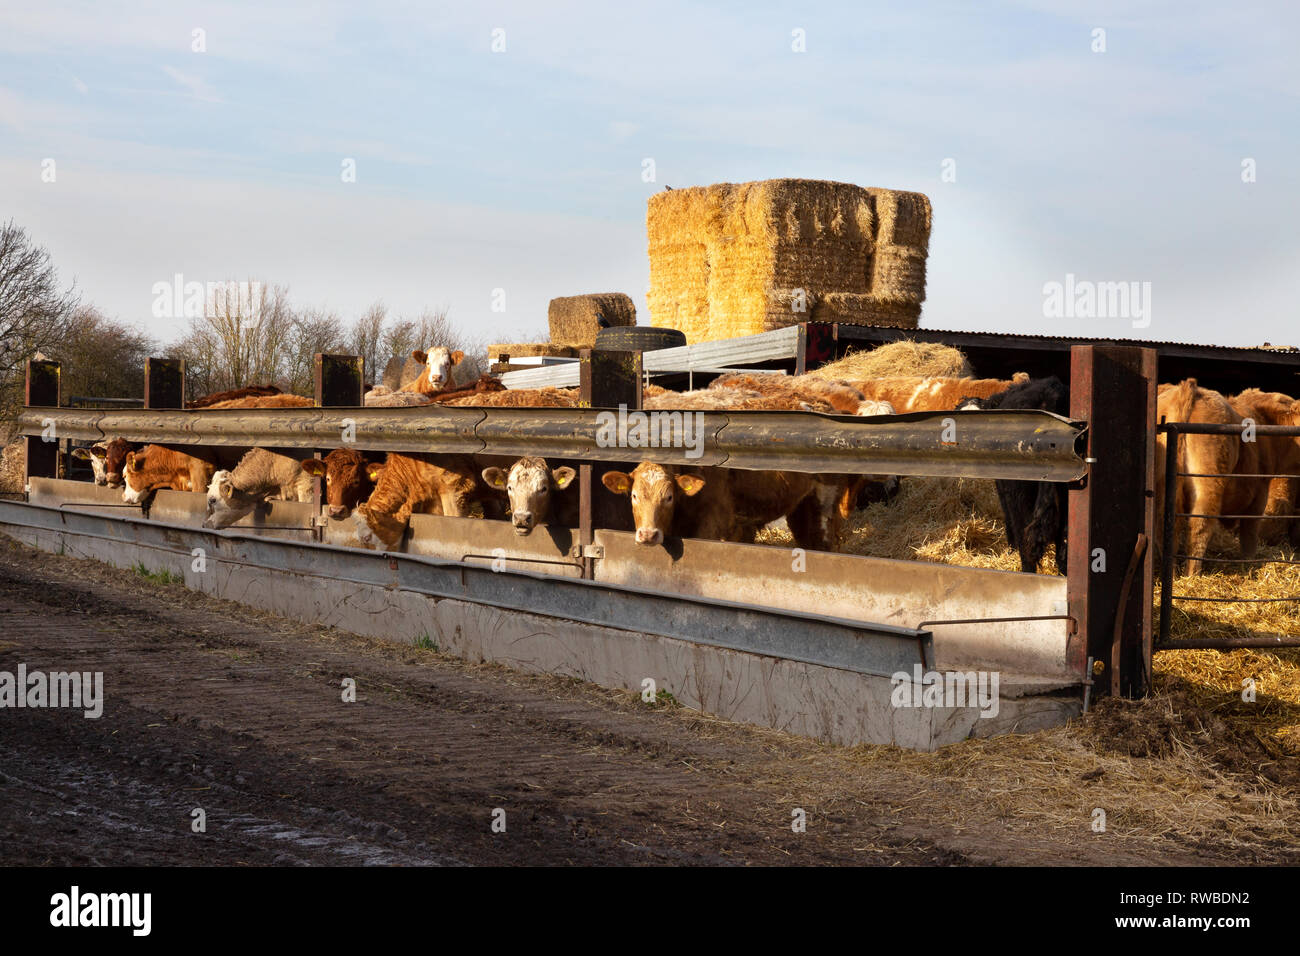 Allevamento di bovini Regno Unito - mucche in un capannone o biera, in un allevamento di bovini in Cambridgeshire Regno Unito, esempio di agricoltura britannica Foto Stock